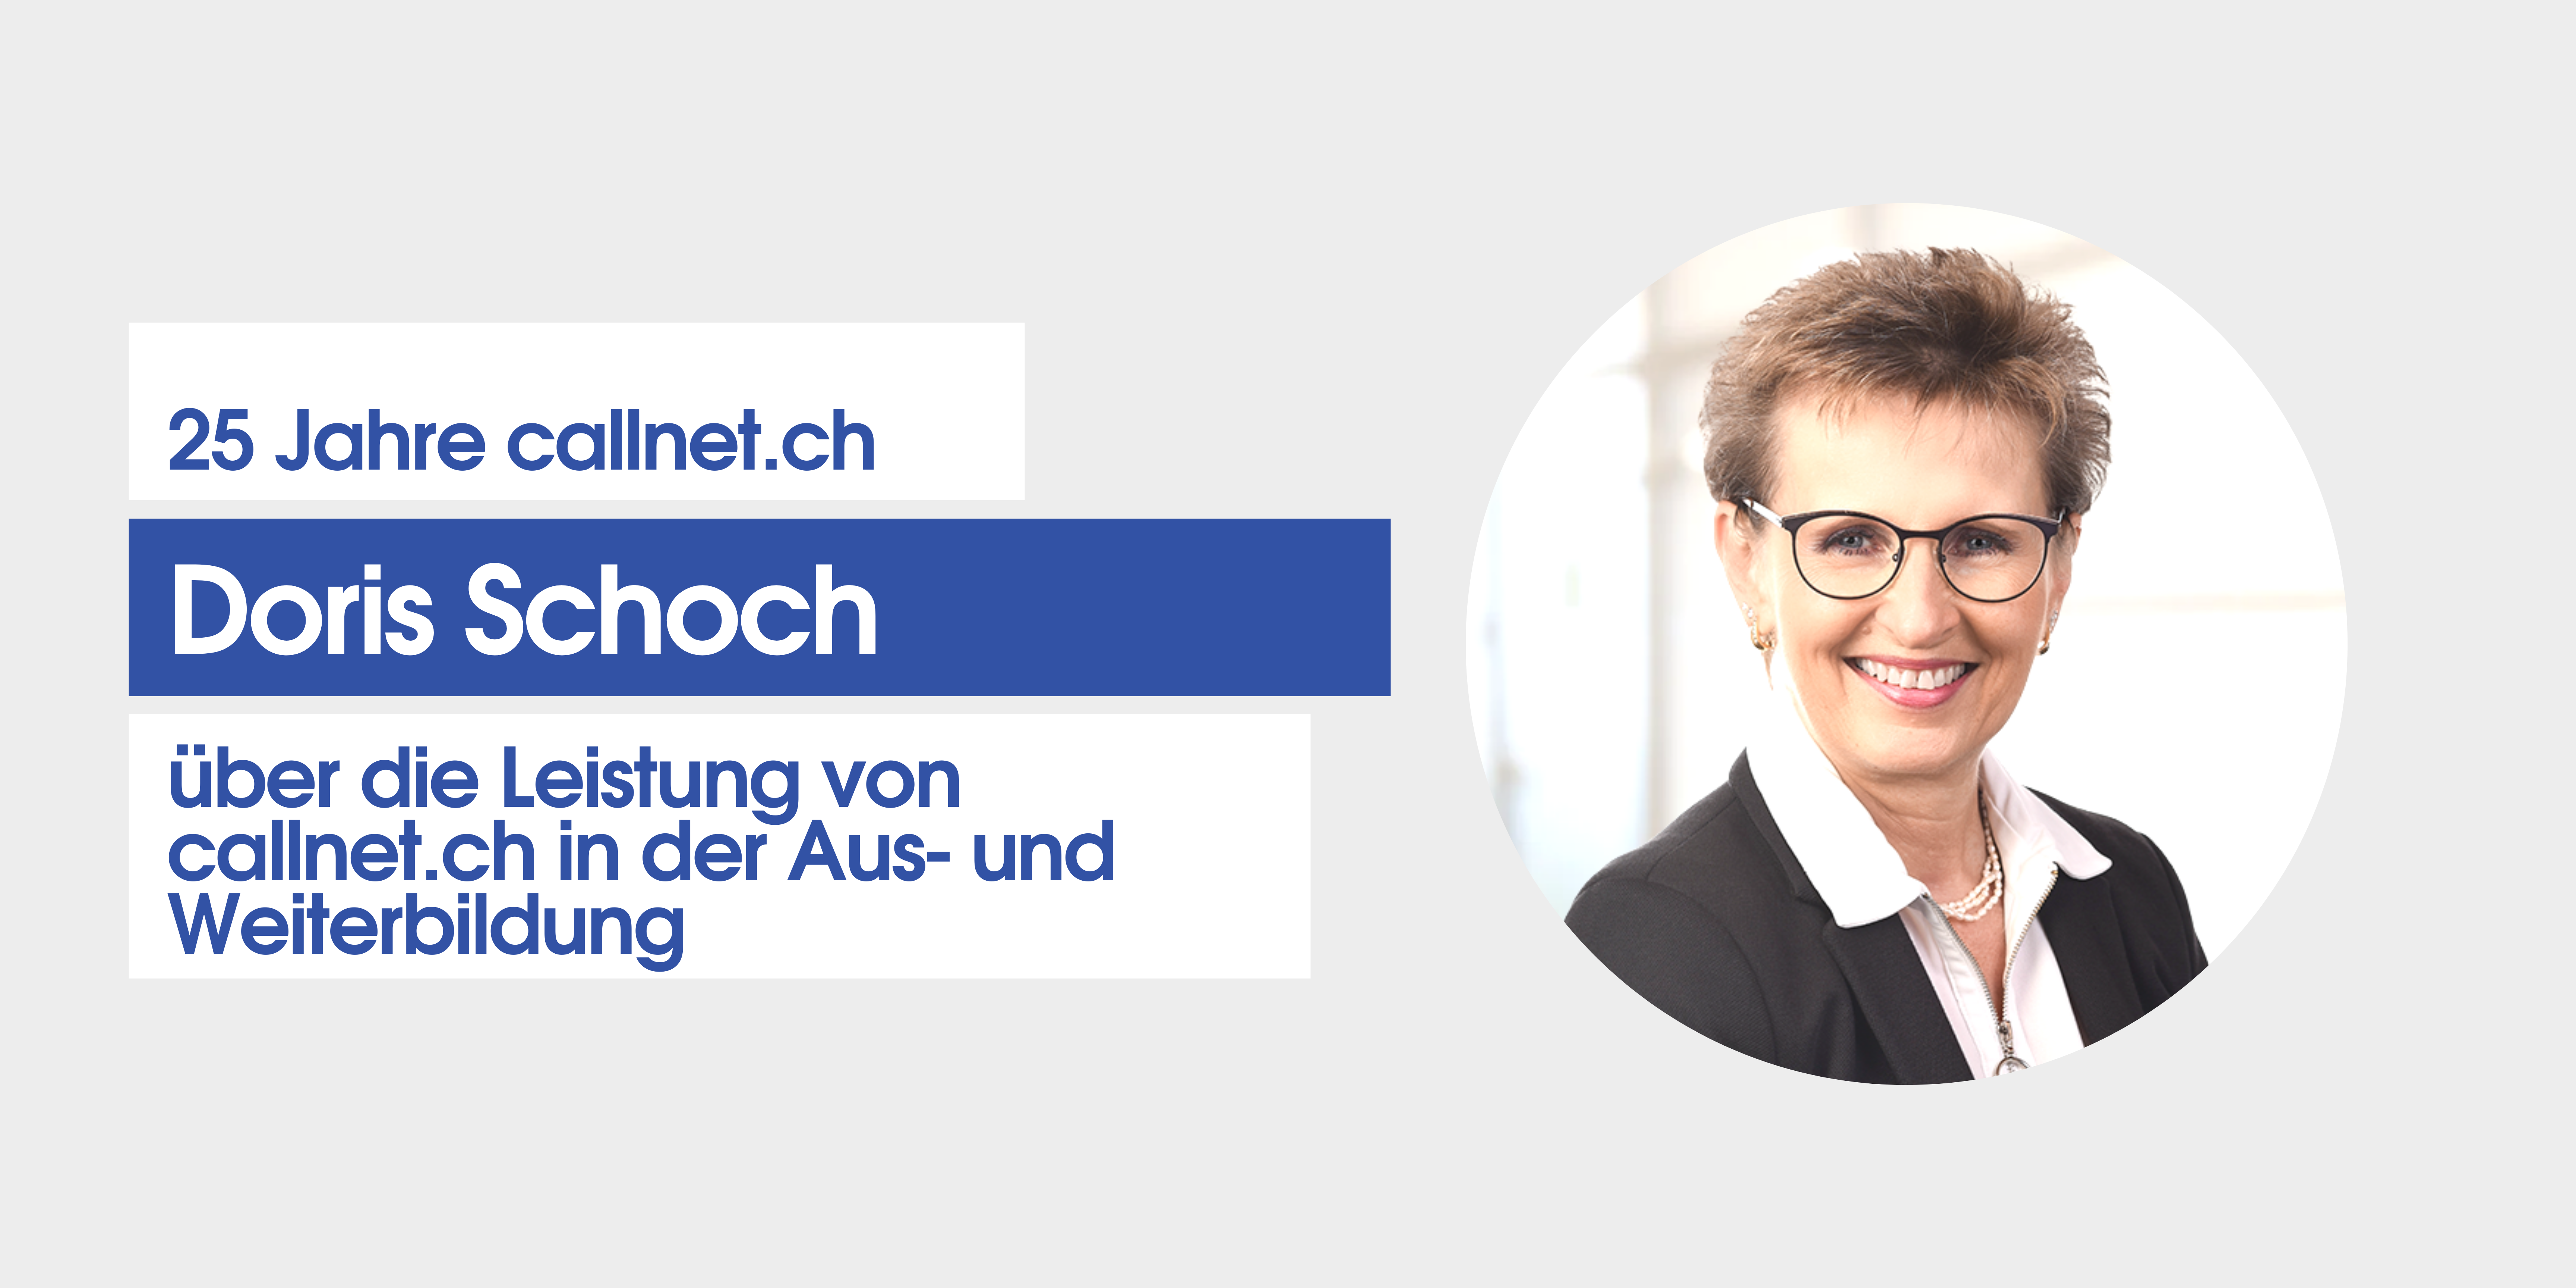 Doris Schoch zu den Leistungen von callnet.ch in Aus- und Weiterbildung